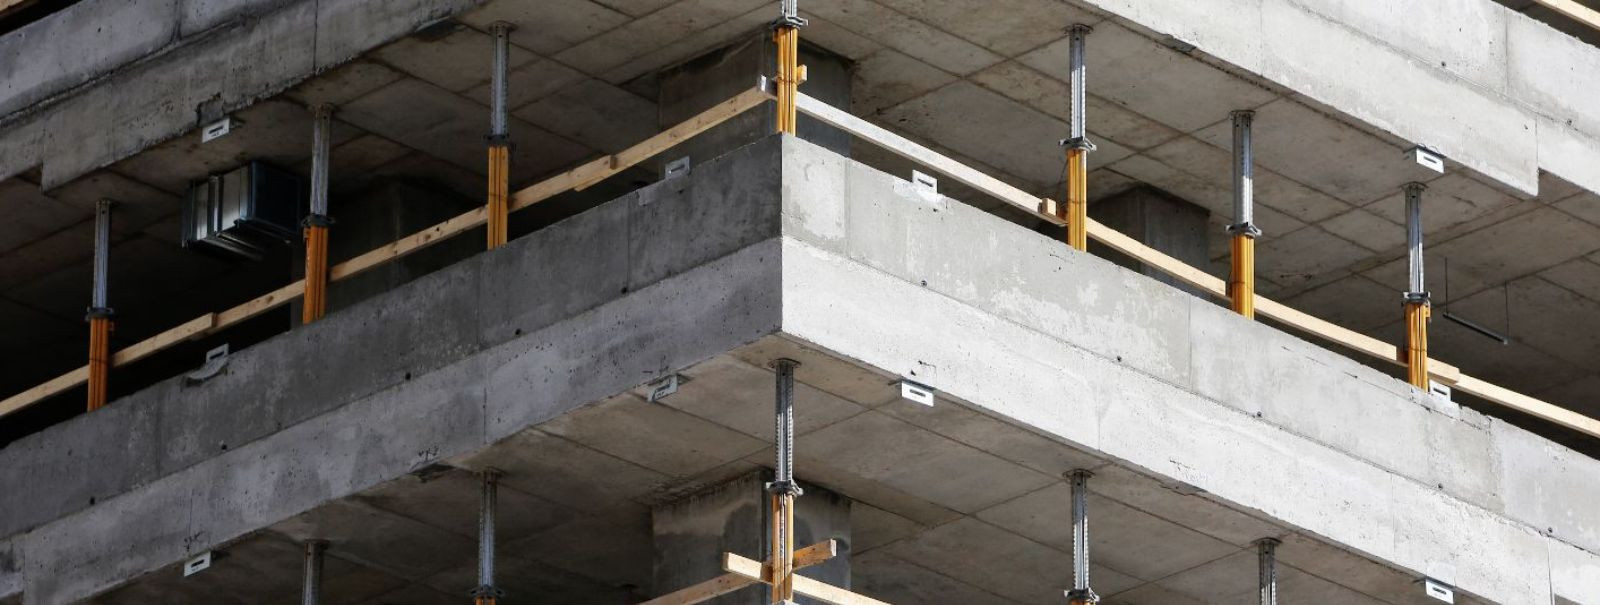 Betoonkonstruktsioonid on üldlevinud ehitusmaterjal, mis pakub tugevust ja vastupidavust mitmesugustele struktuuridele. Kuid ajapikku võivad need konstruktsioon